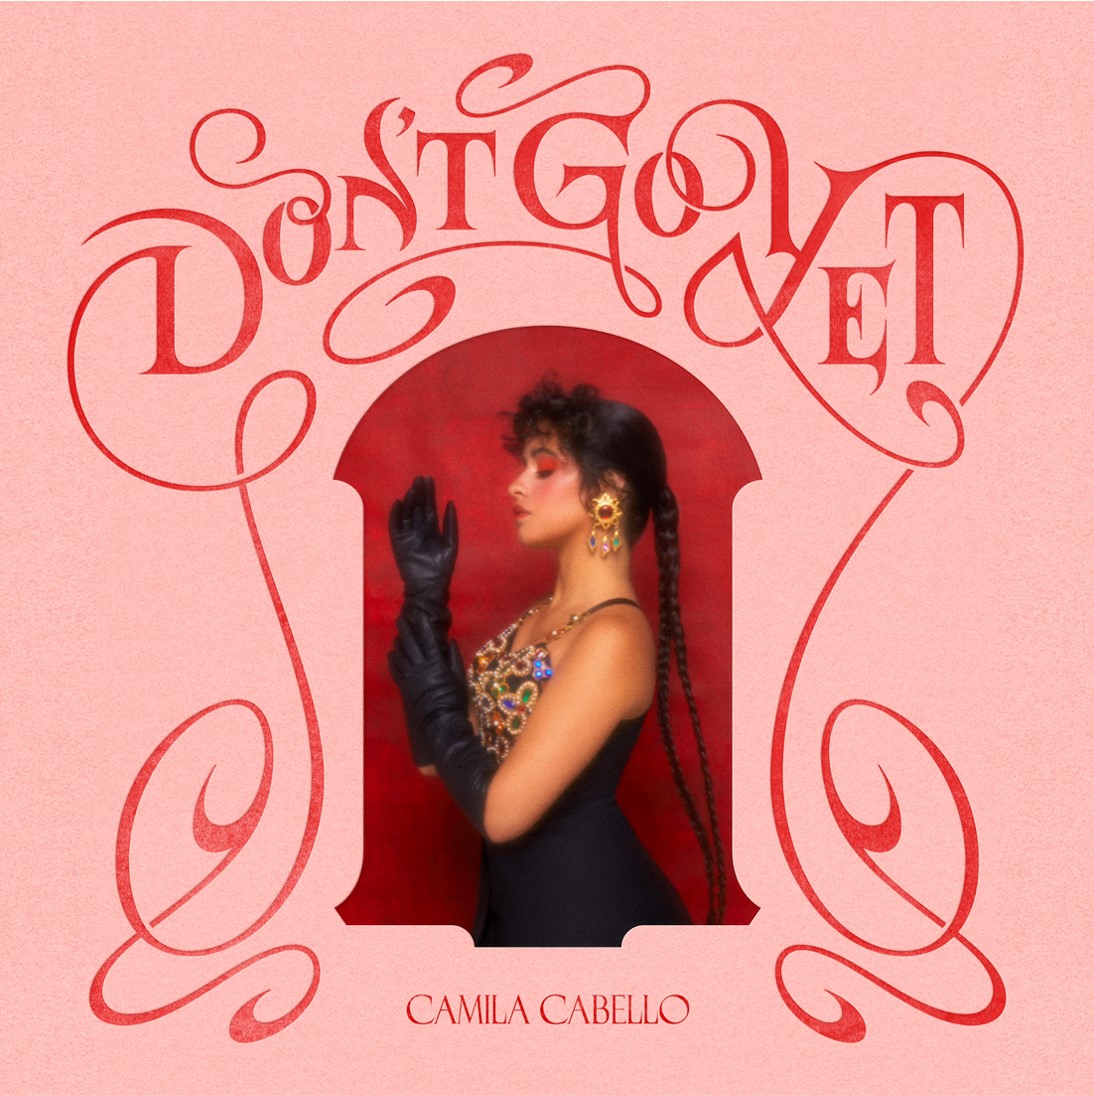 전세계를 강타한 ‘Havana’, ‘ Señorita’ 열풍의 주역!카밀라 카베요(Camila Cabello),신곡 ‘Don’t Go Yet’ 발매!!